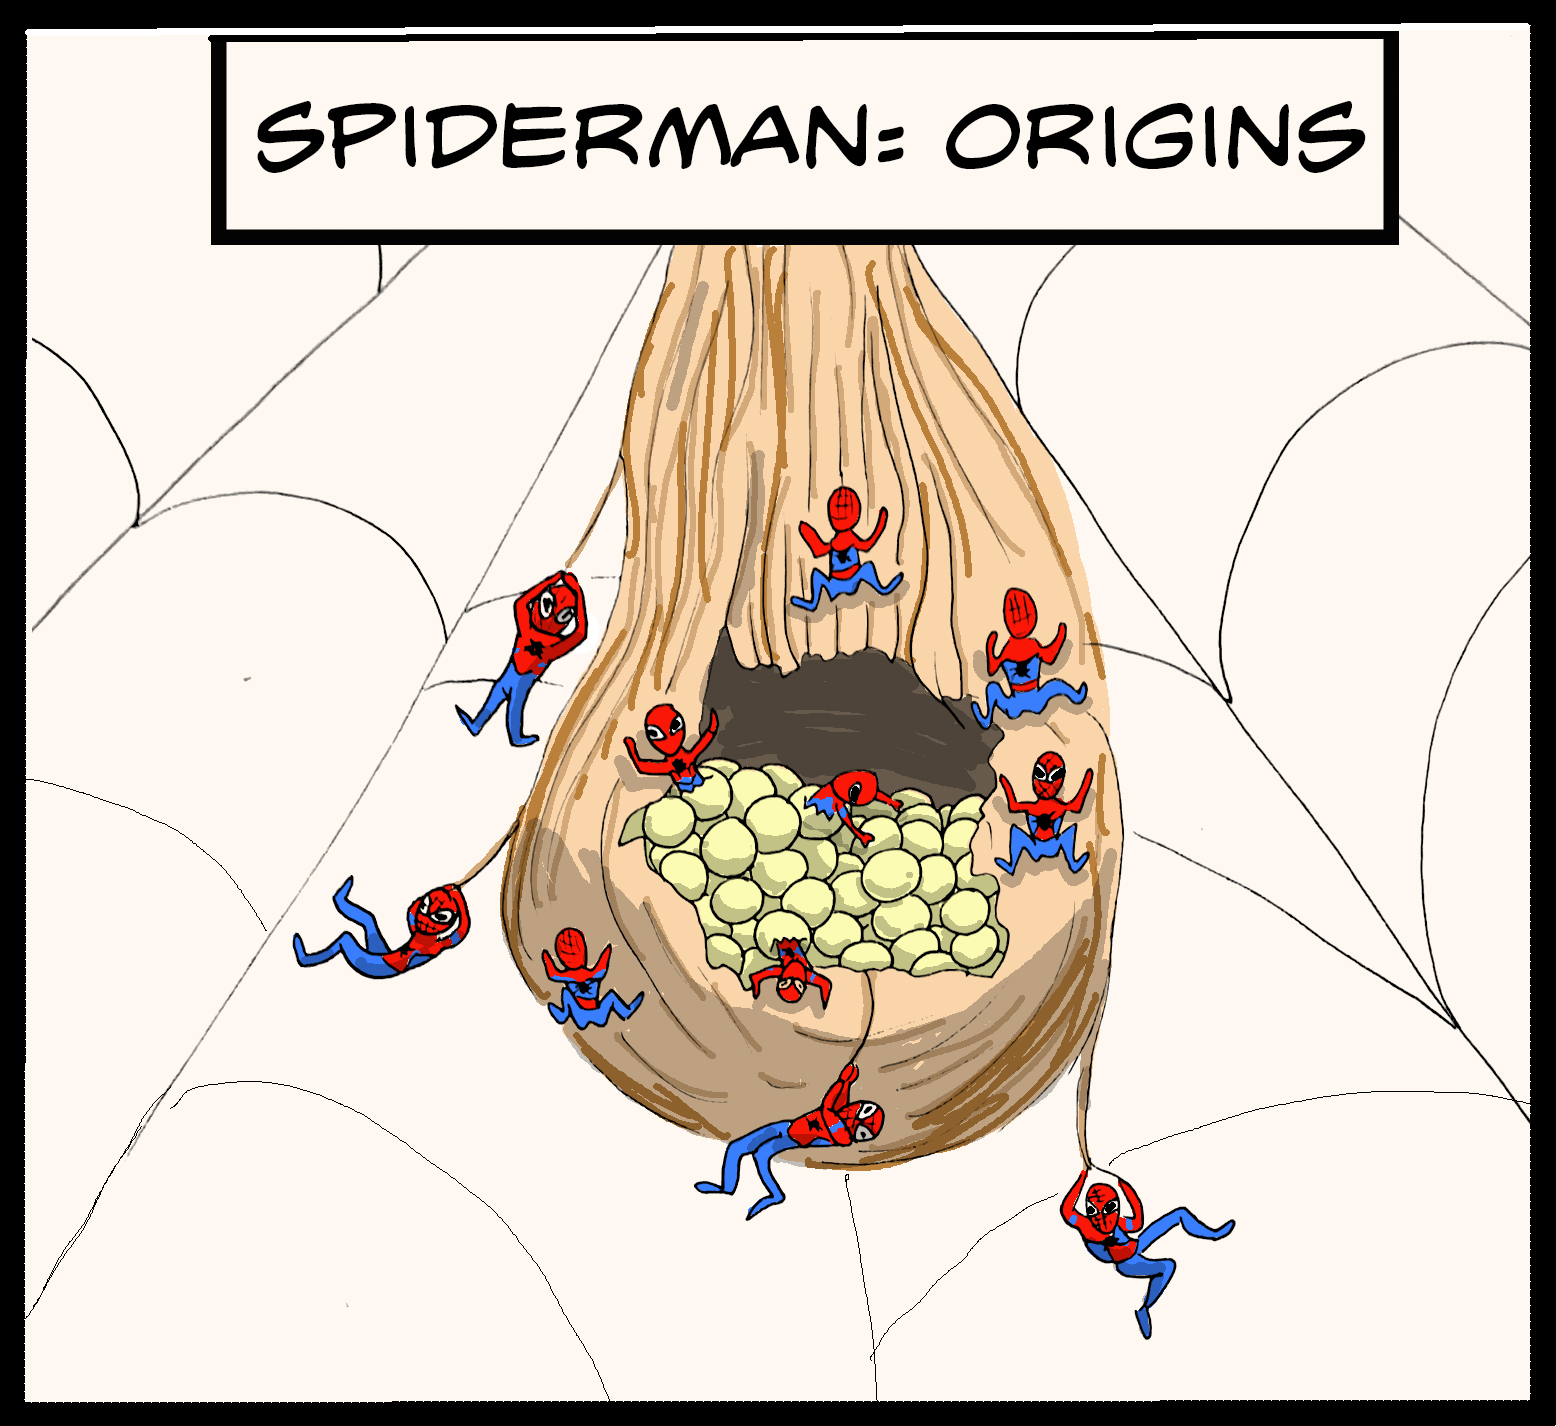 Spider-Man: Origins